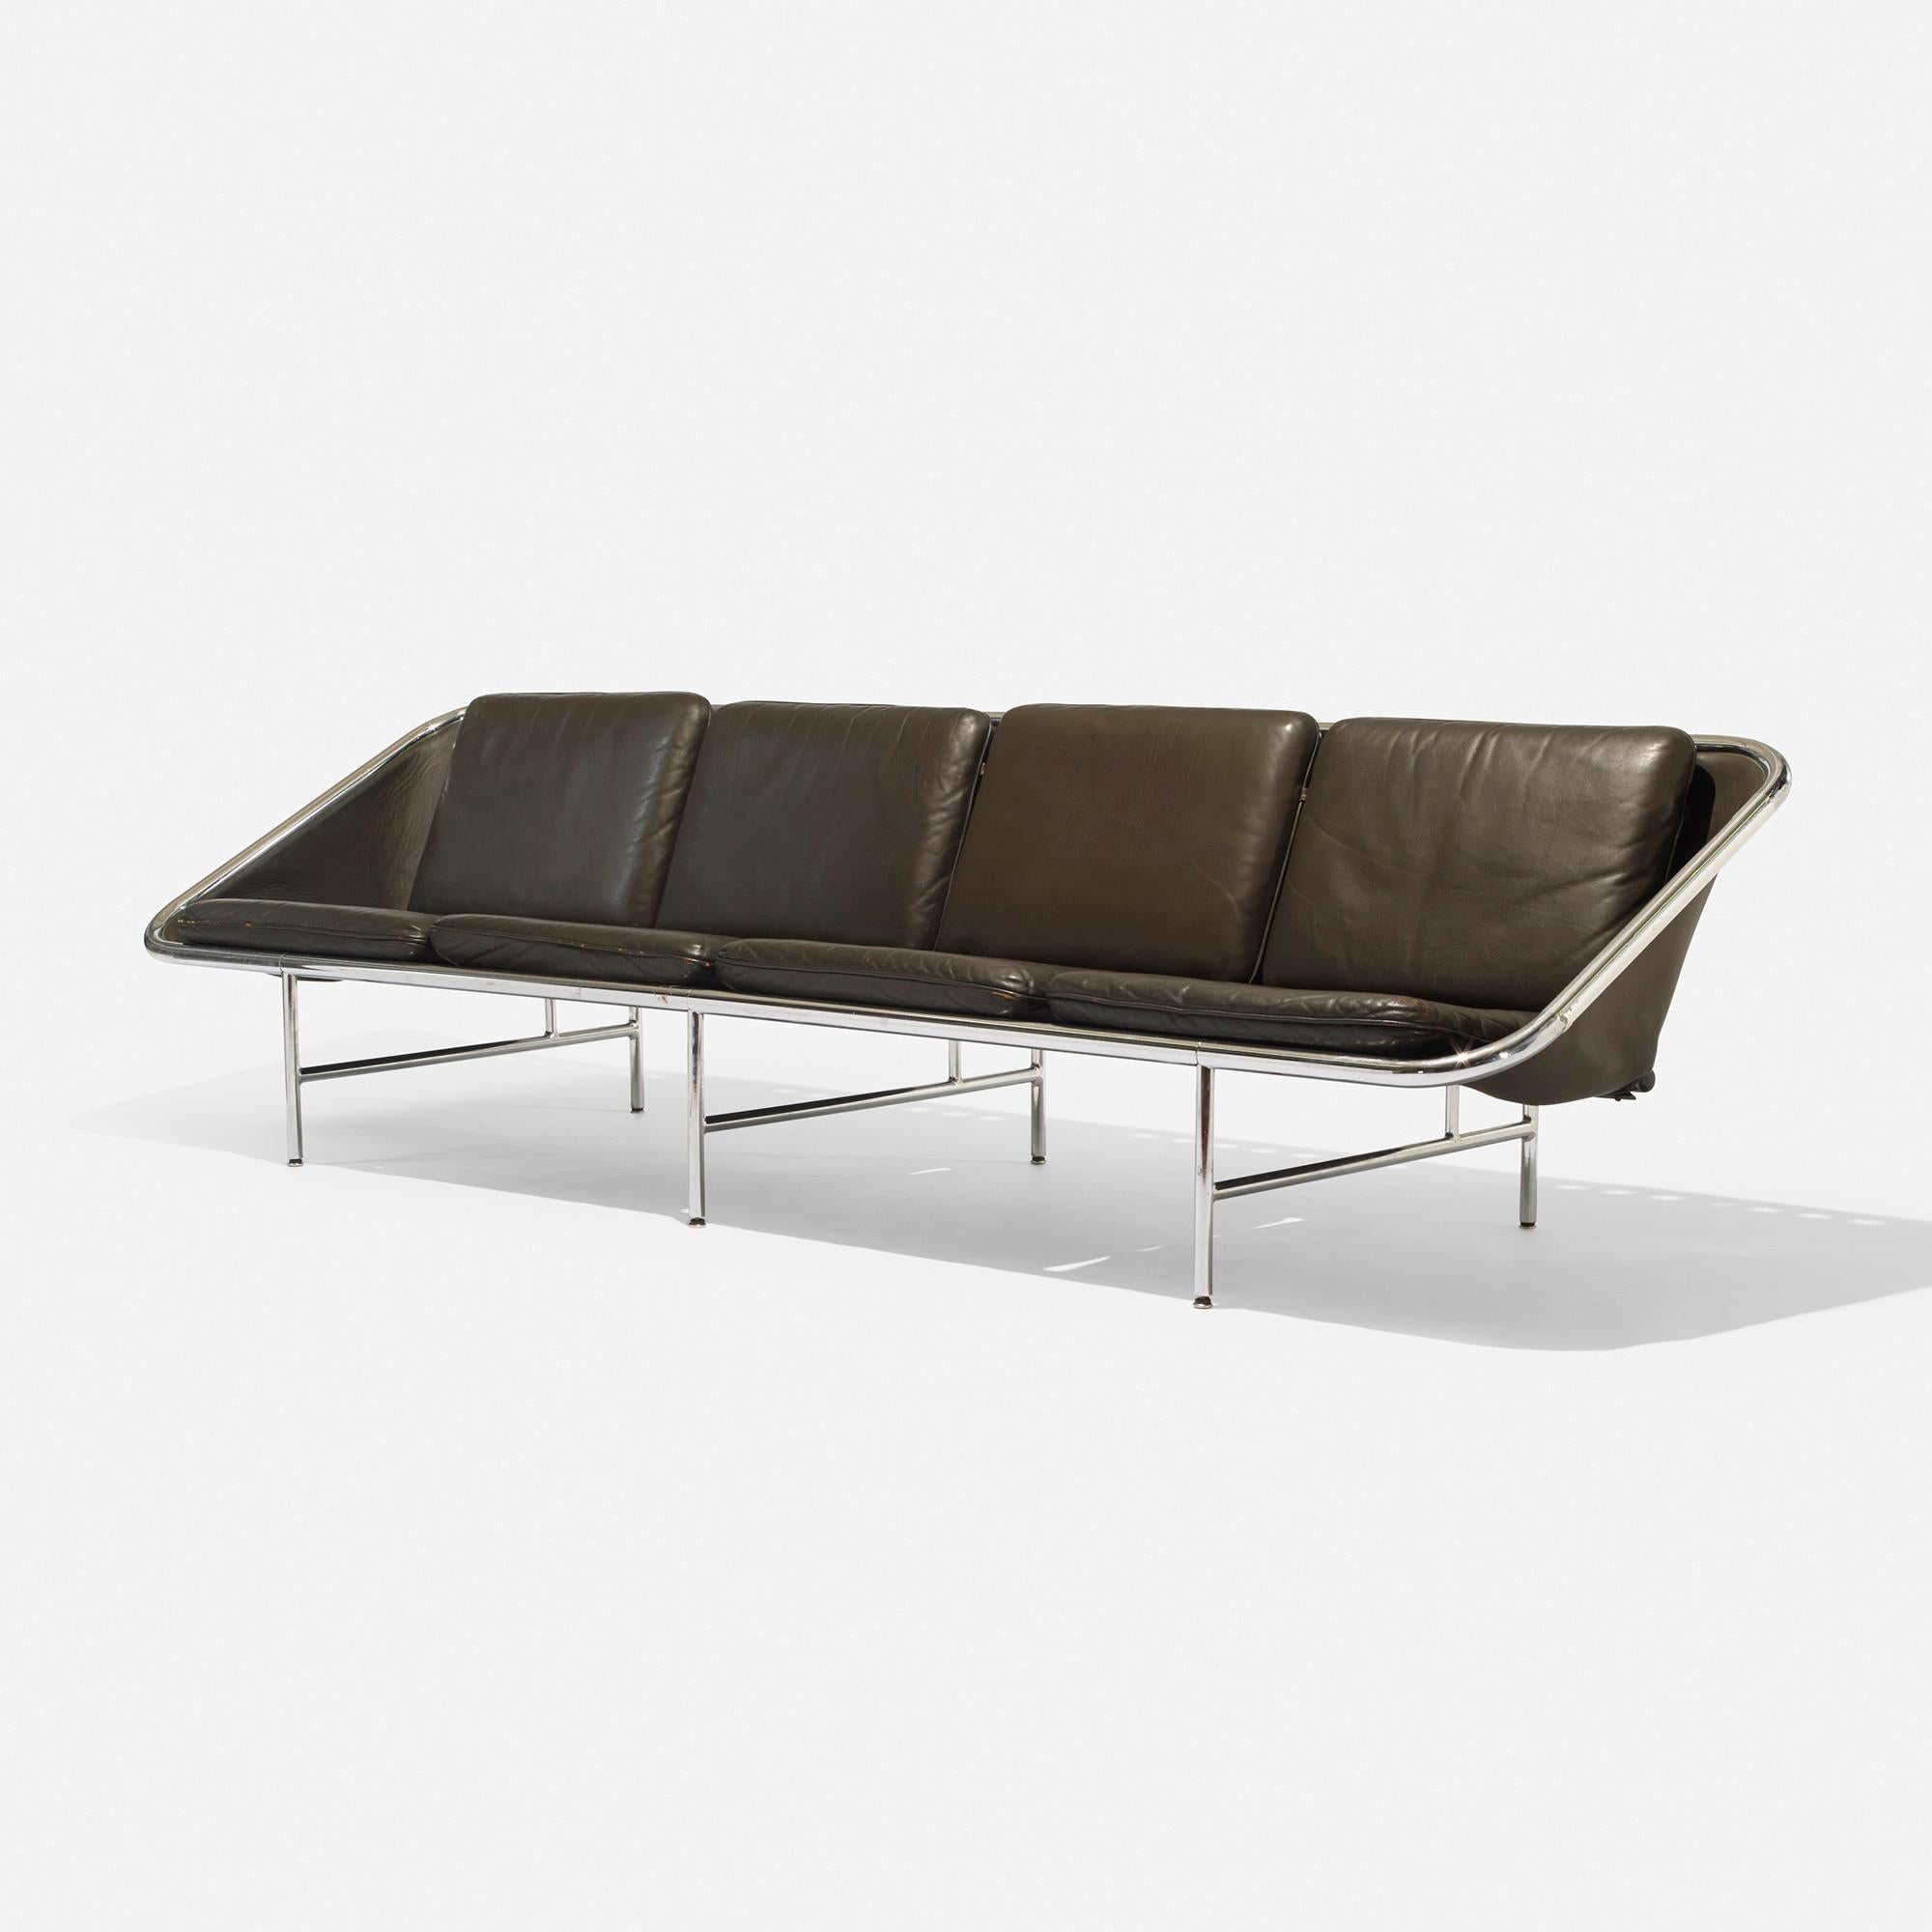 Hergestellt von: Herman Miller, USA, 1963

Material: Leder, verchromter Stahl, Gummi

Größe: 112 B × 32 T × 29 H in

Das luxuriöse Sling-Sofa Modell 6833 wurde in drei Größen hergestellt; dieses Exemplar ist das größte.